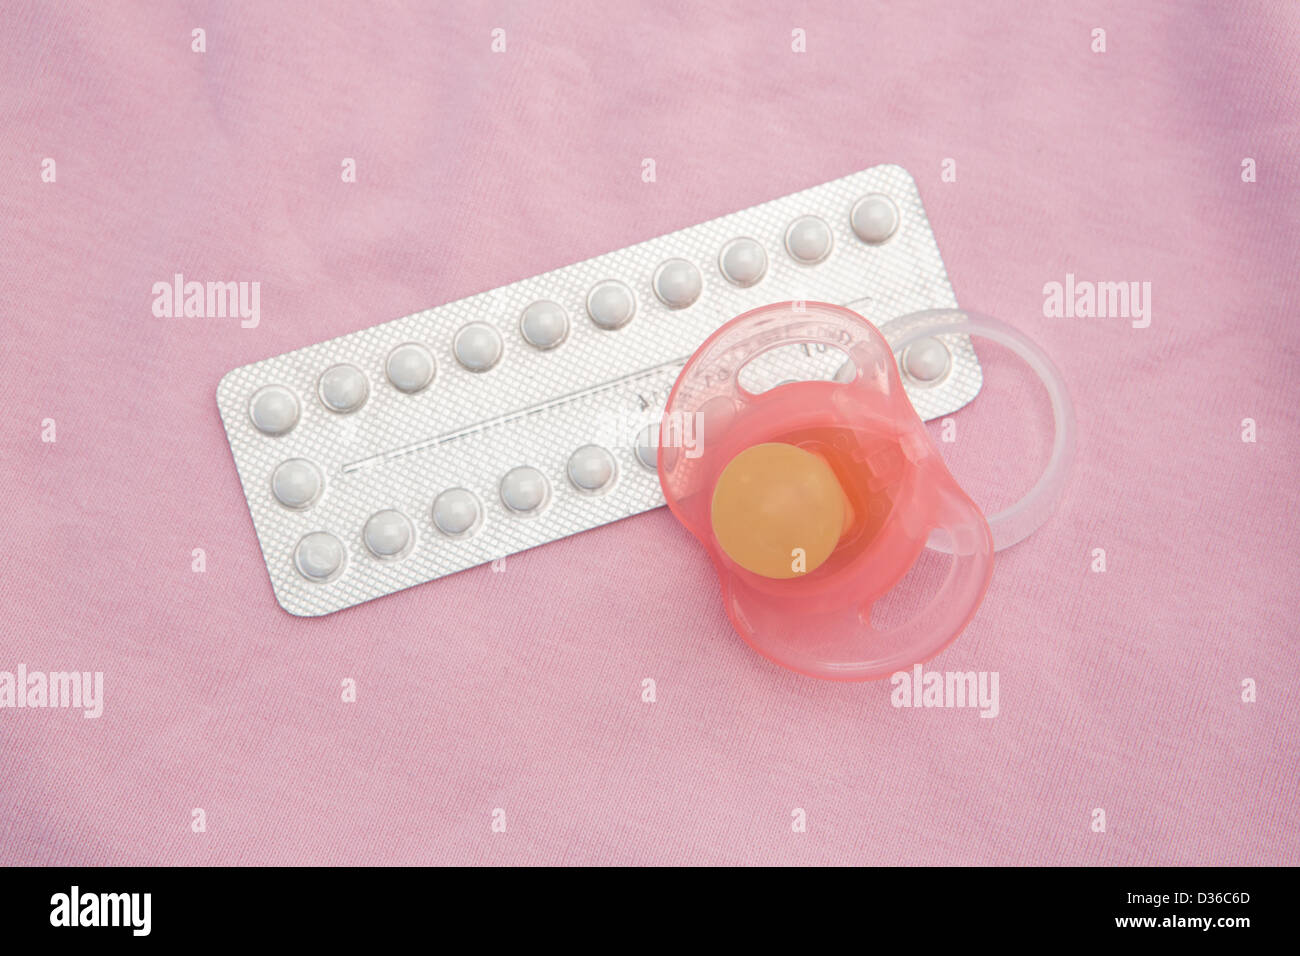 Pilule contraceptive paquet avec sucette rose Banque D'Images